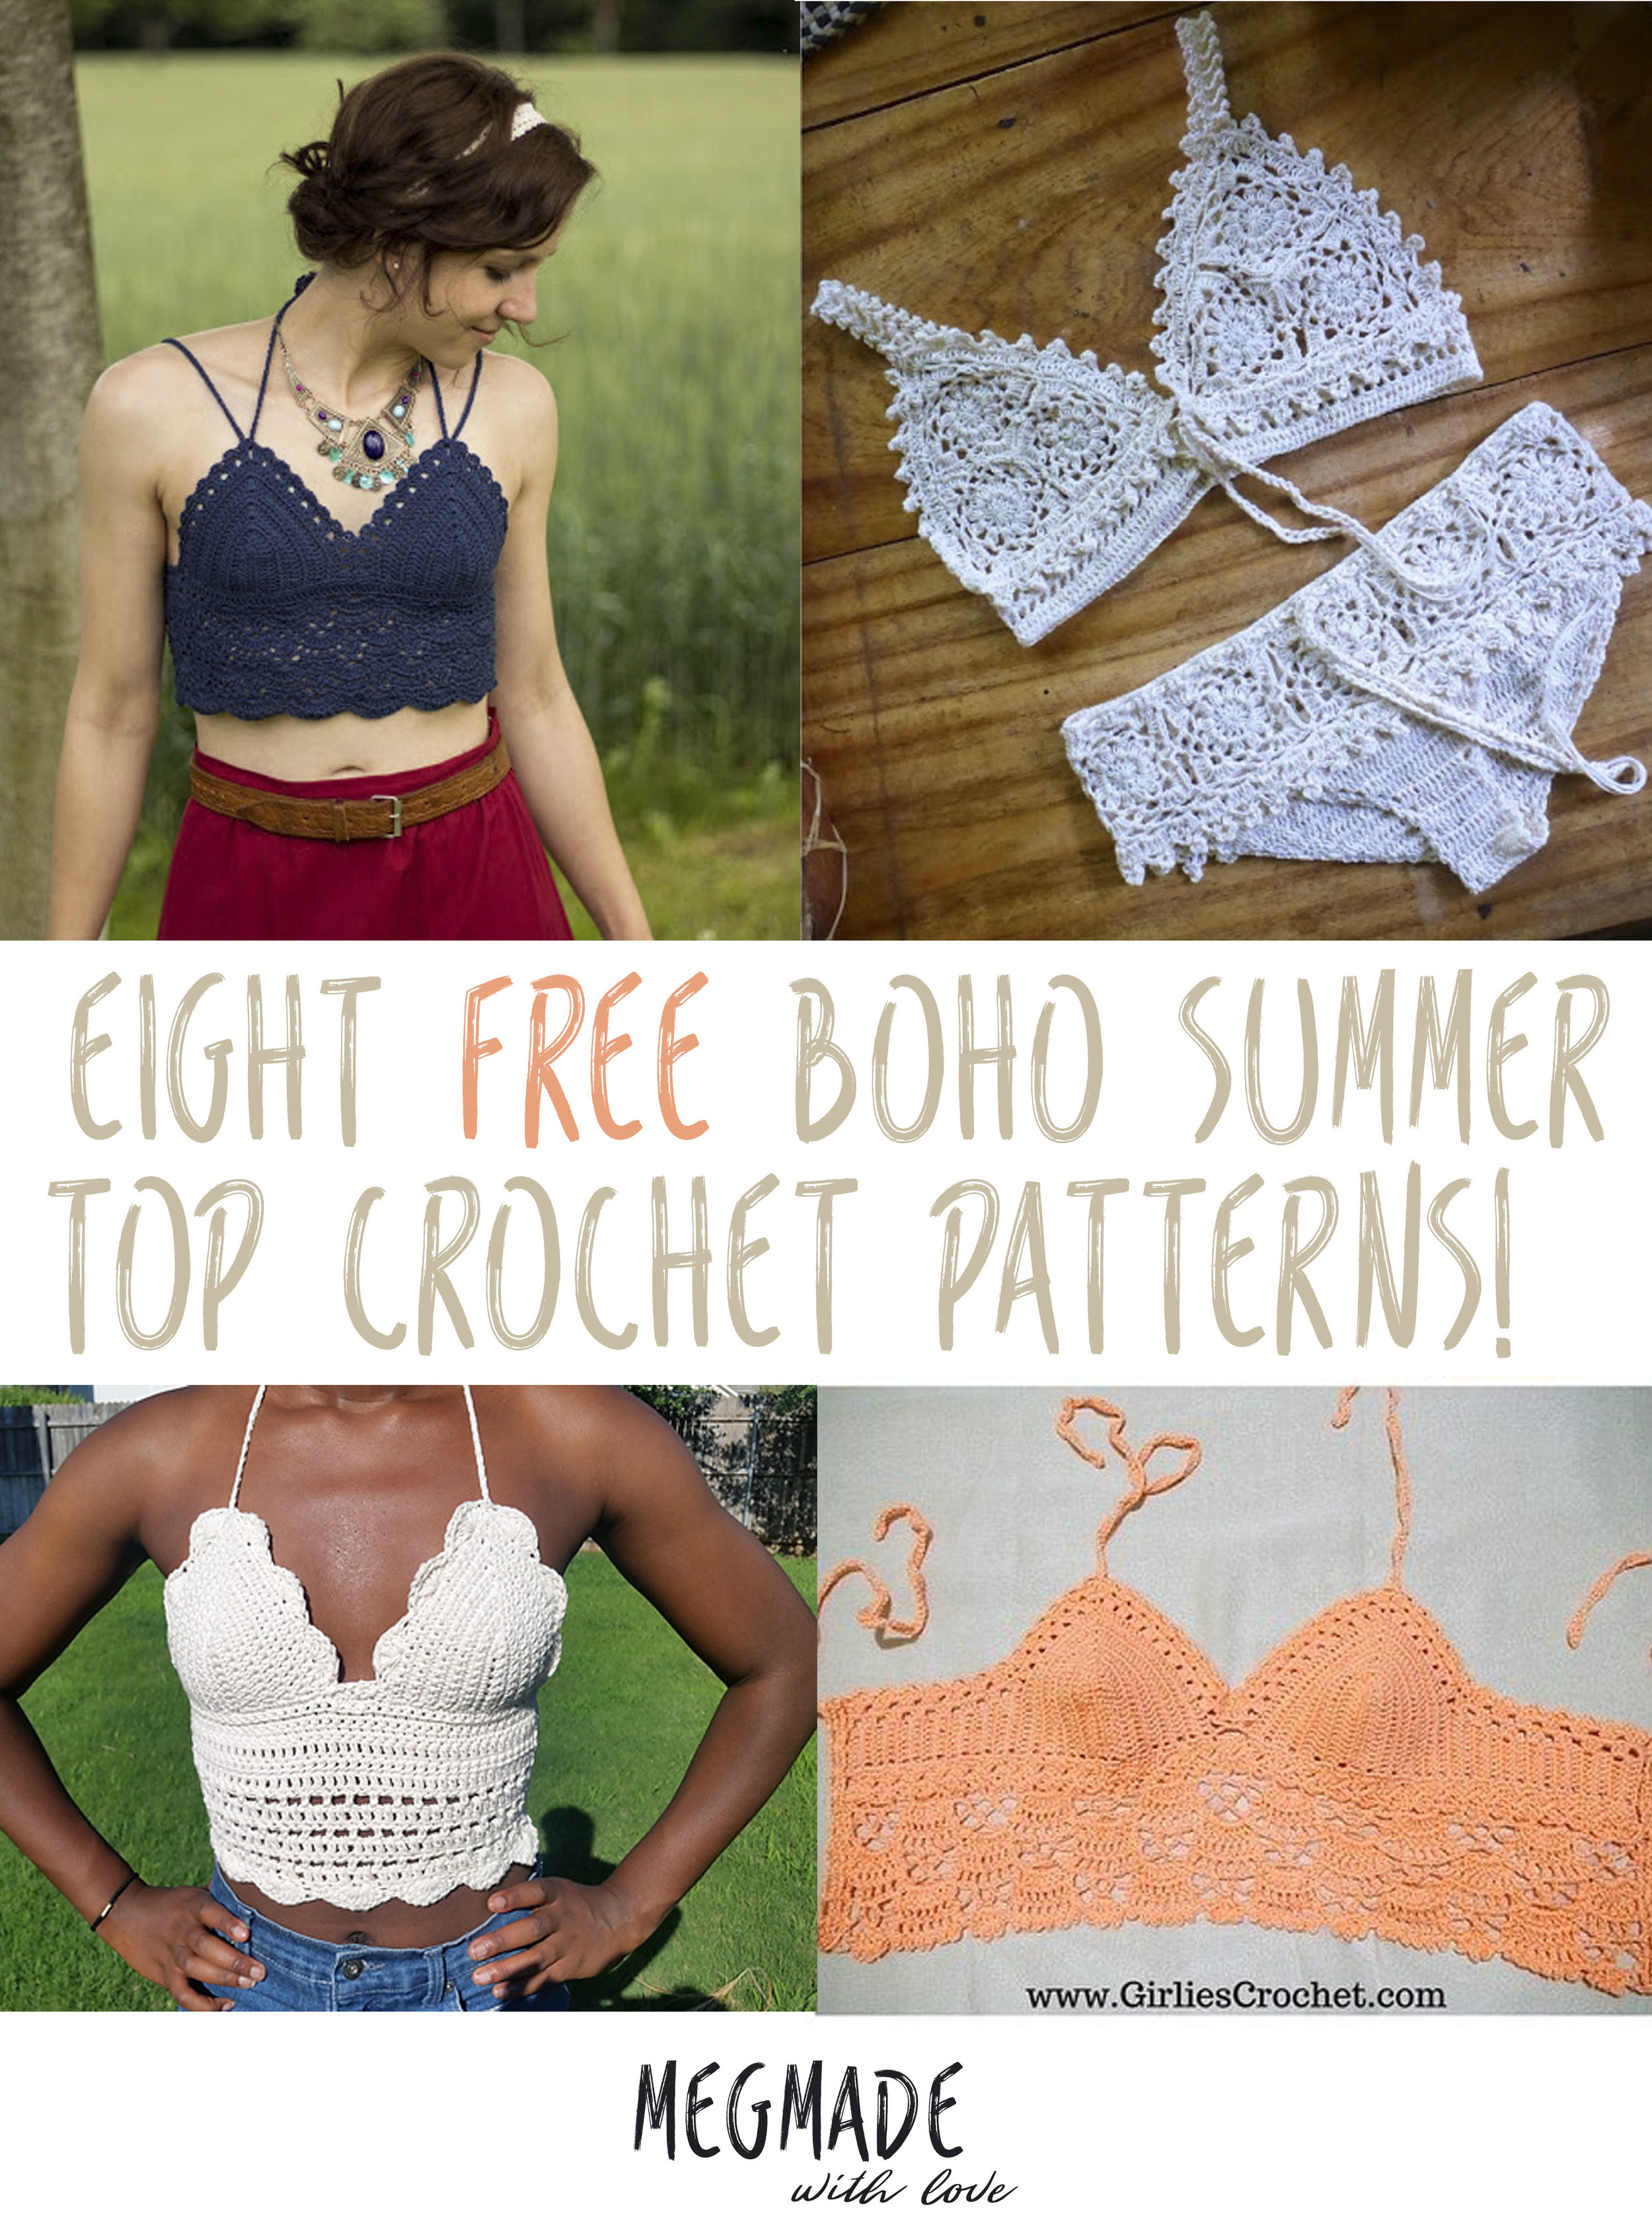 Beautiful Halter Tops for Summer - Crochet Patterns  Diy crochet top,  Crochet crop top pattern, Crochet halter top pattern